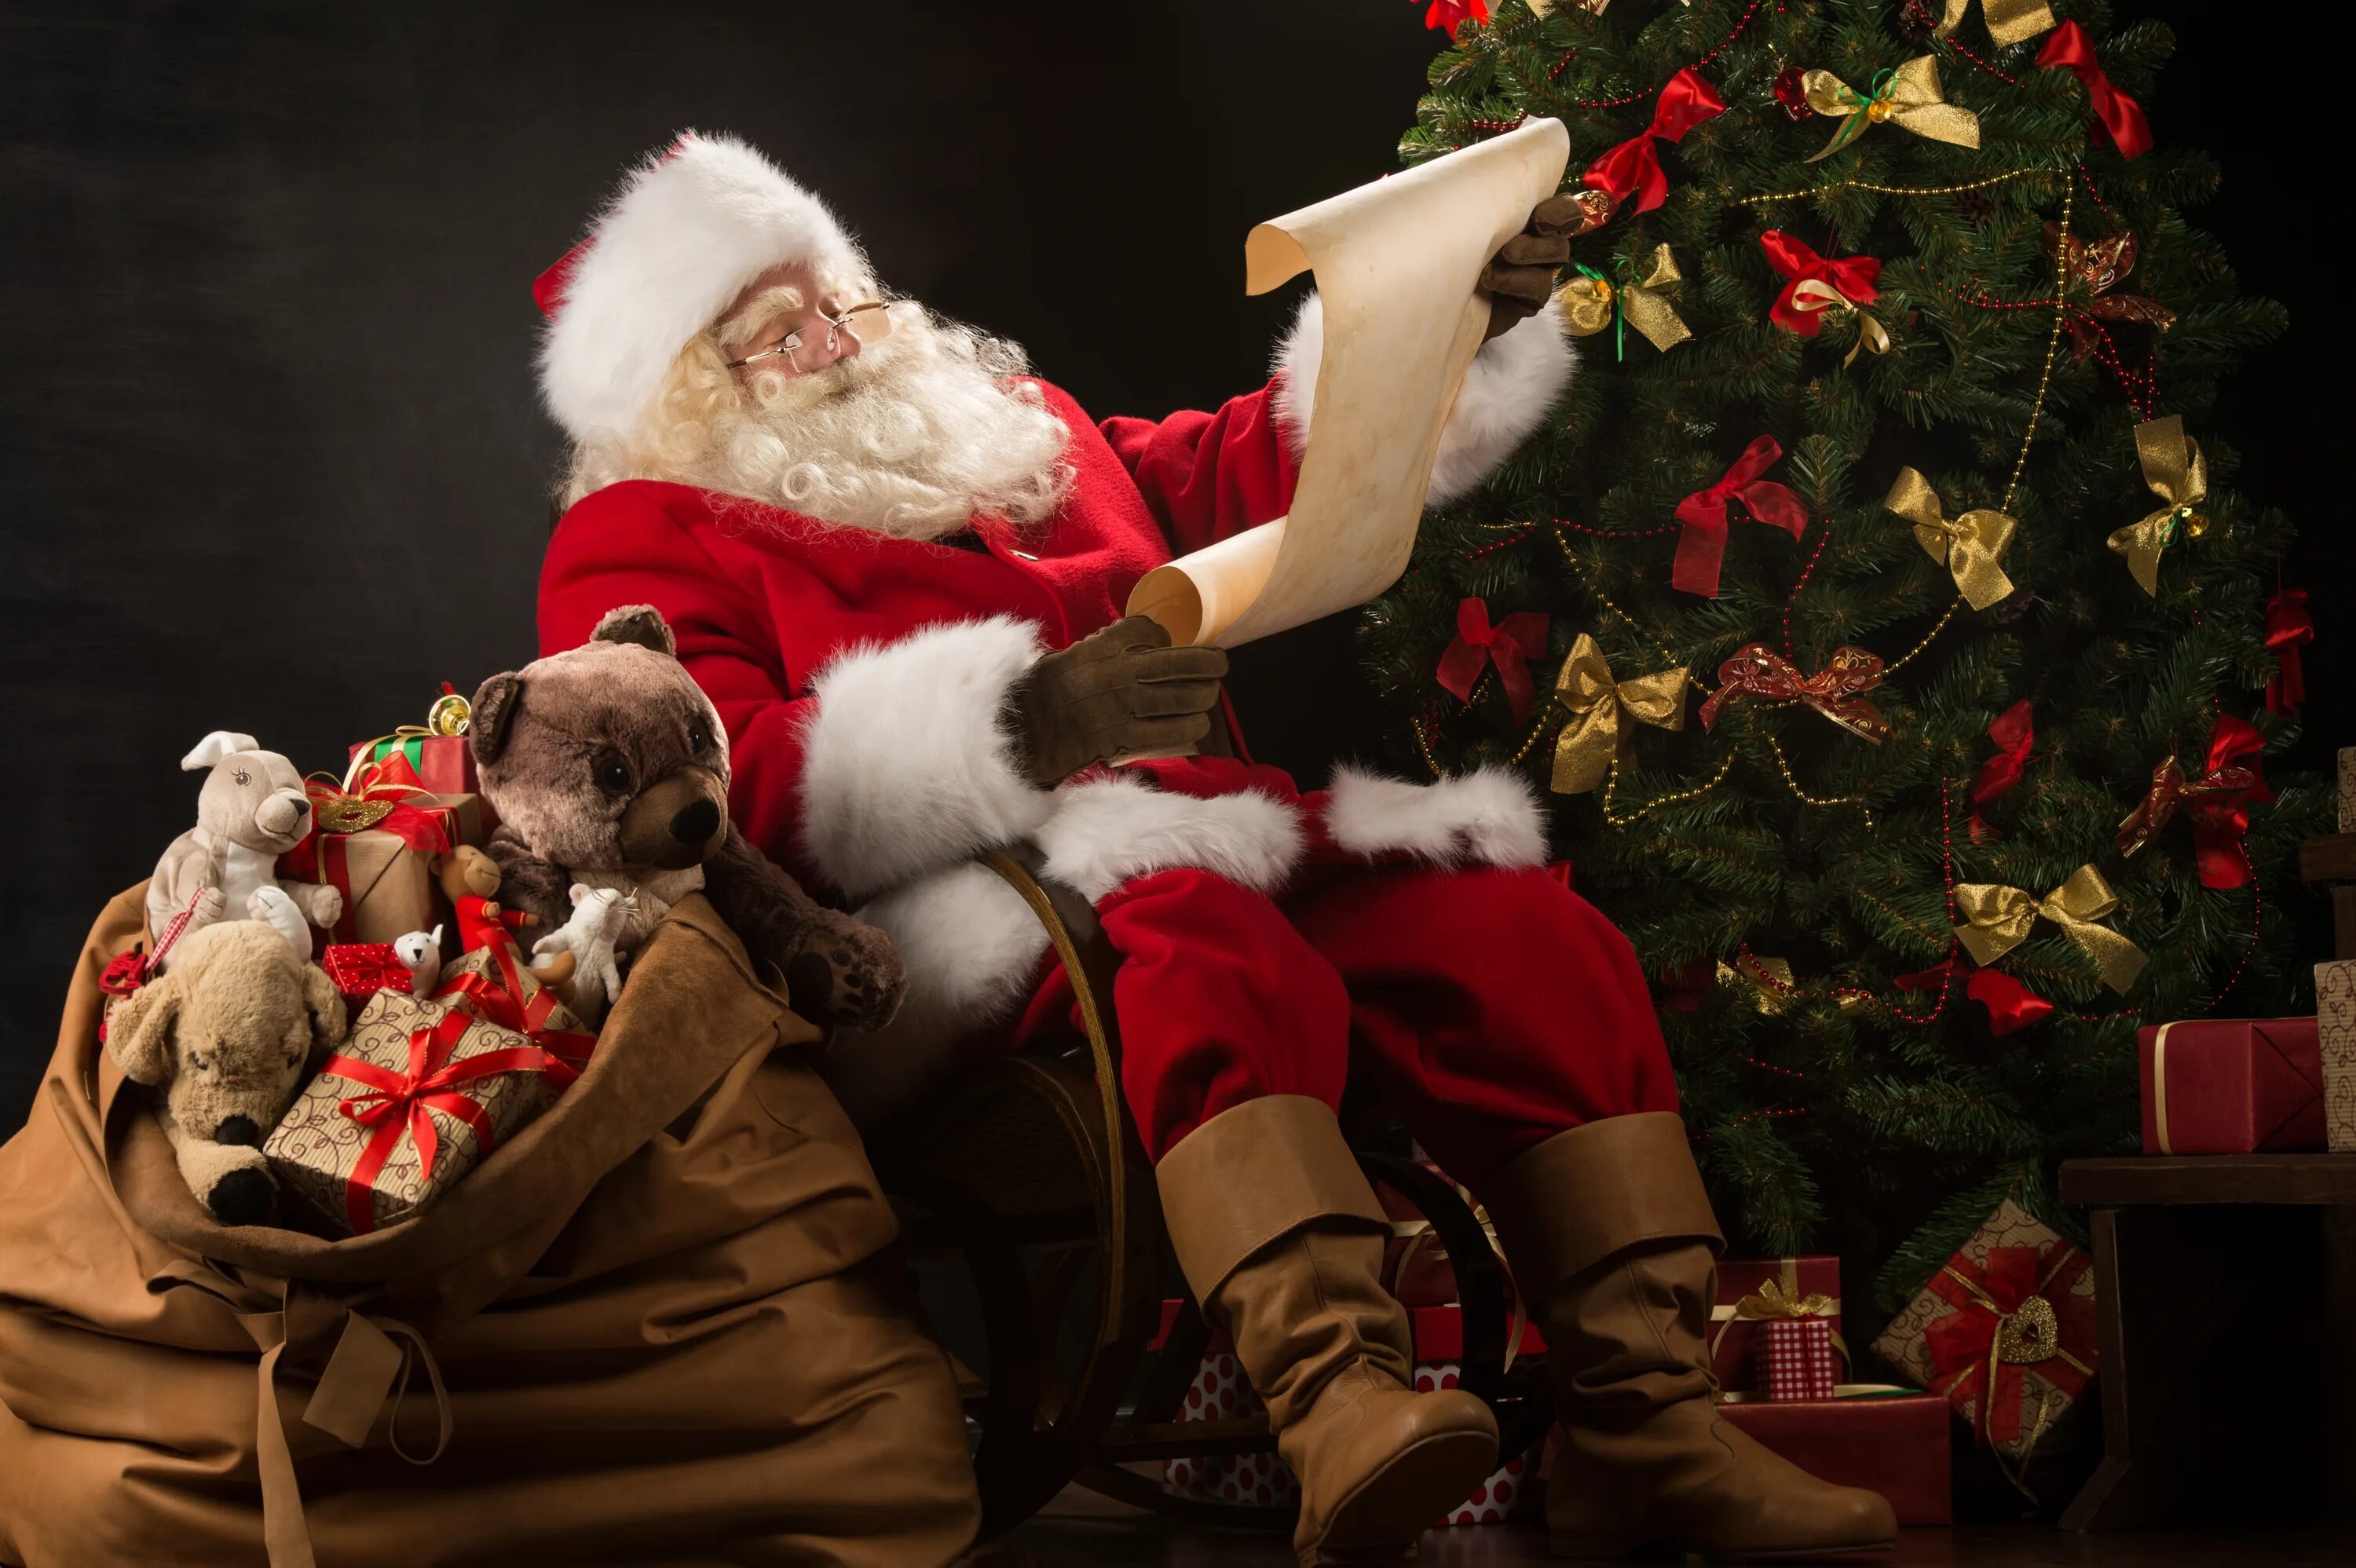 Дед мороз на новый год. Santa Клаус и елка. Санта-Клаус. Santa Claus дед Мороз. Санта Каймс.